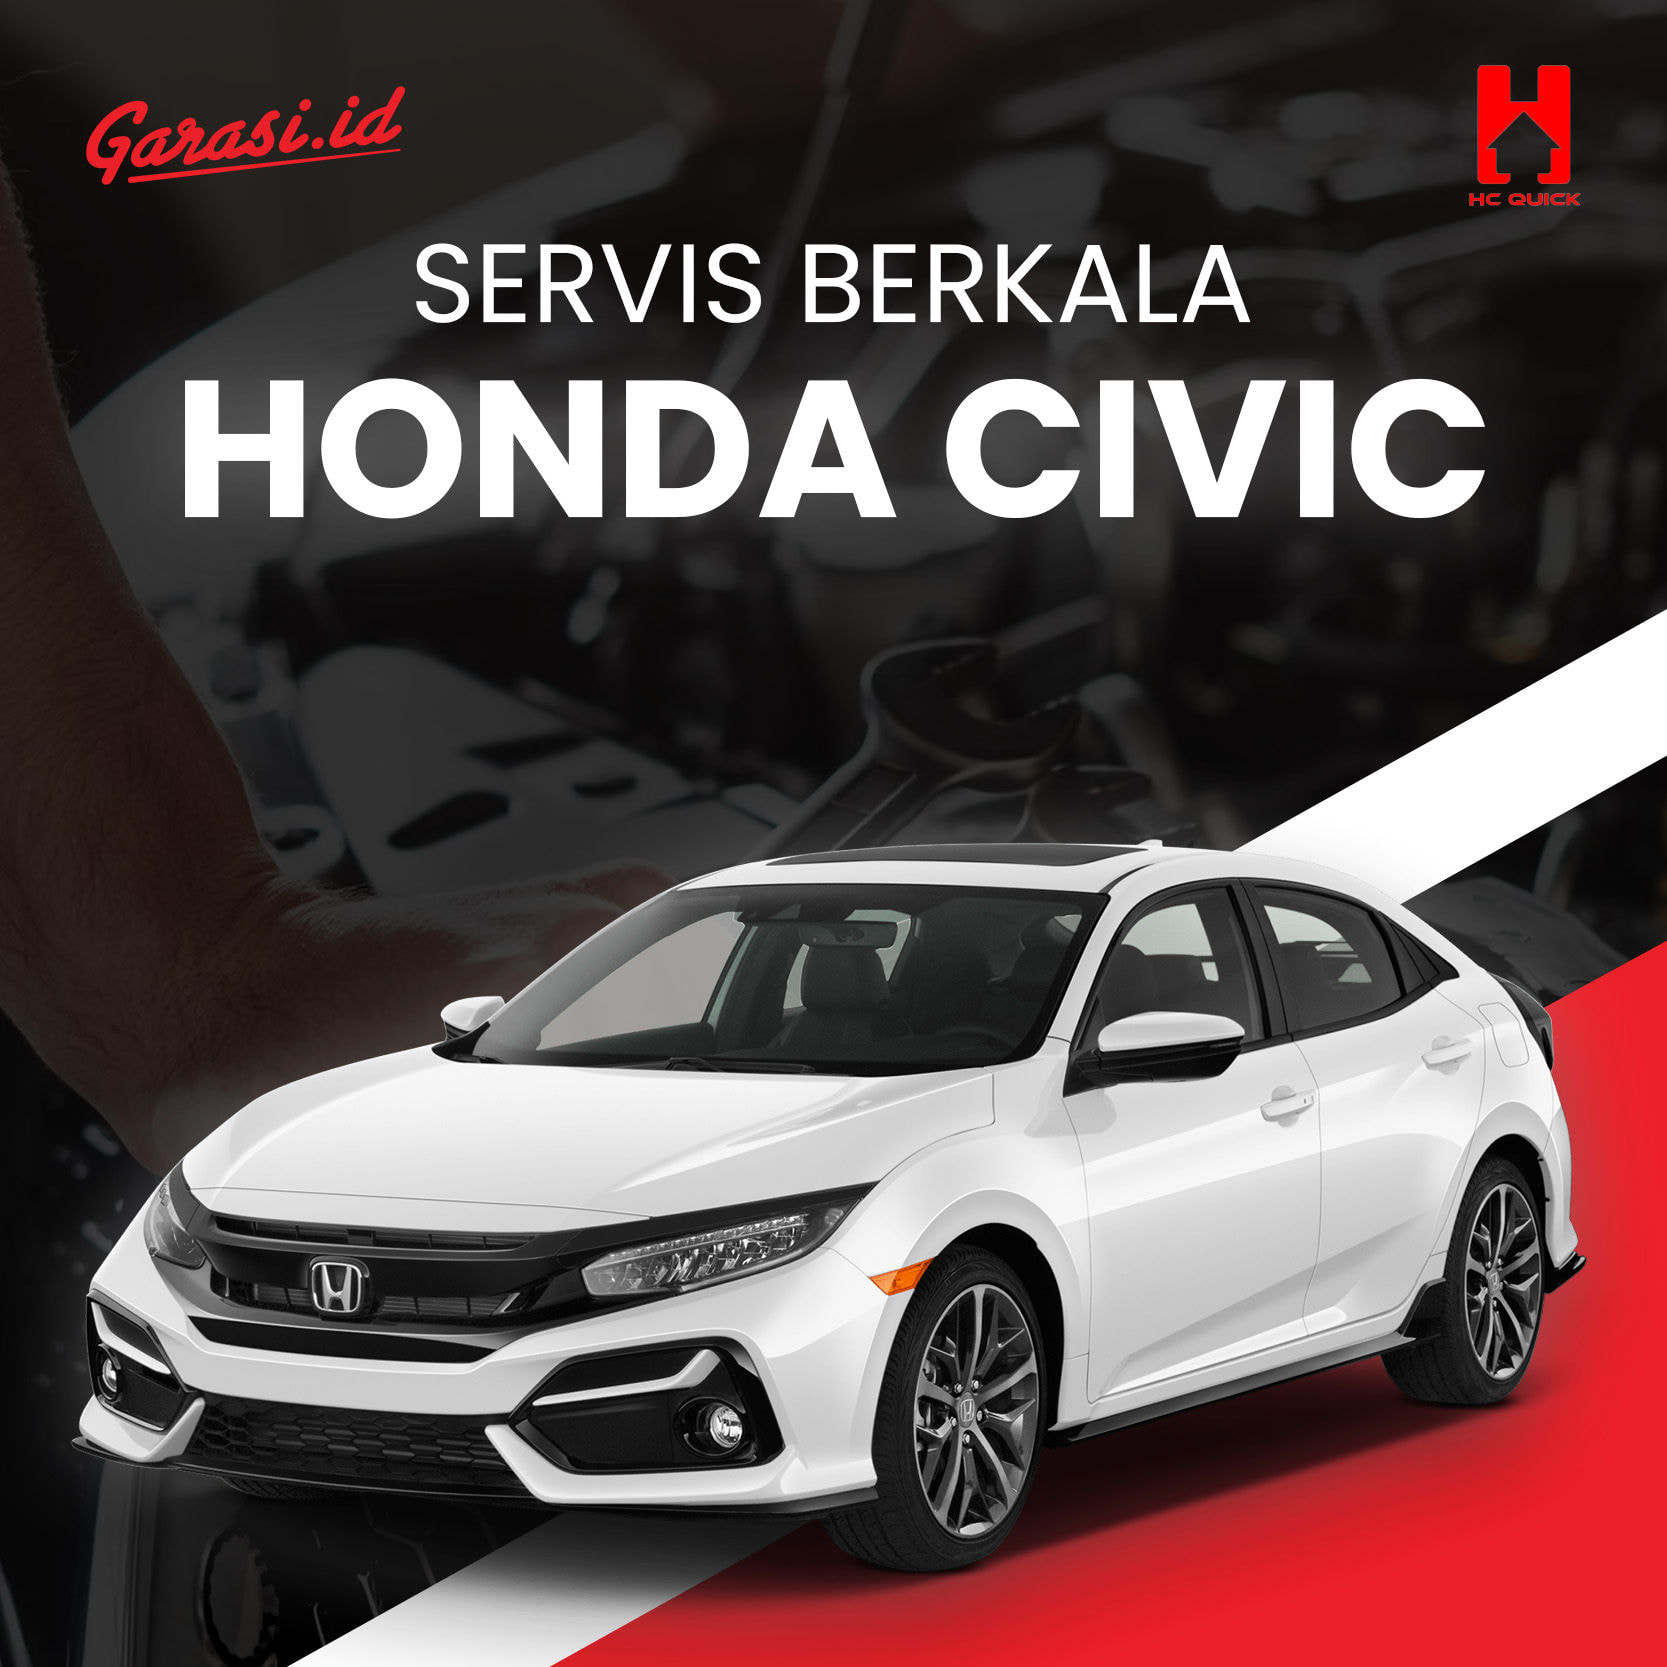 Paket perawatan service berkala Honda Civic